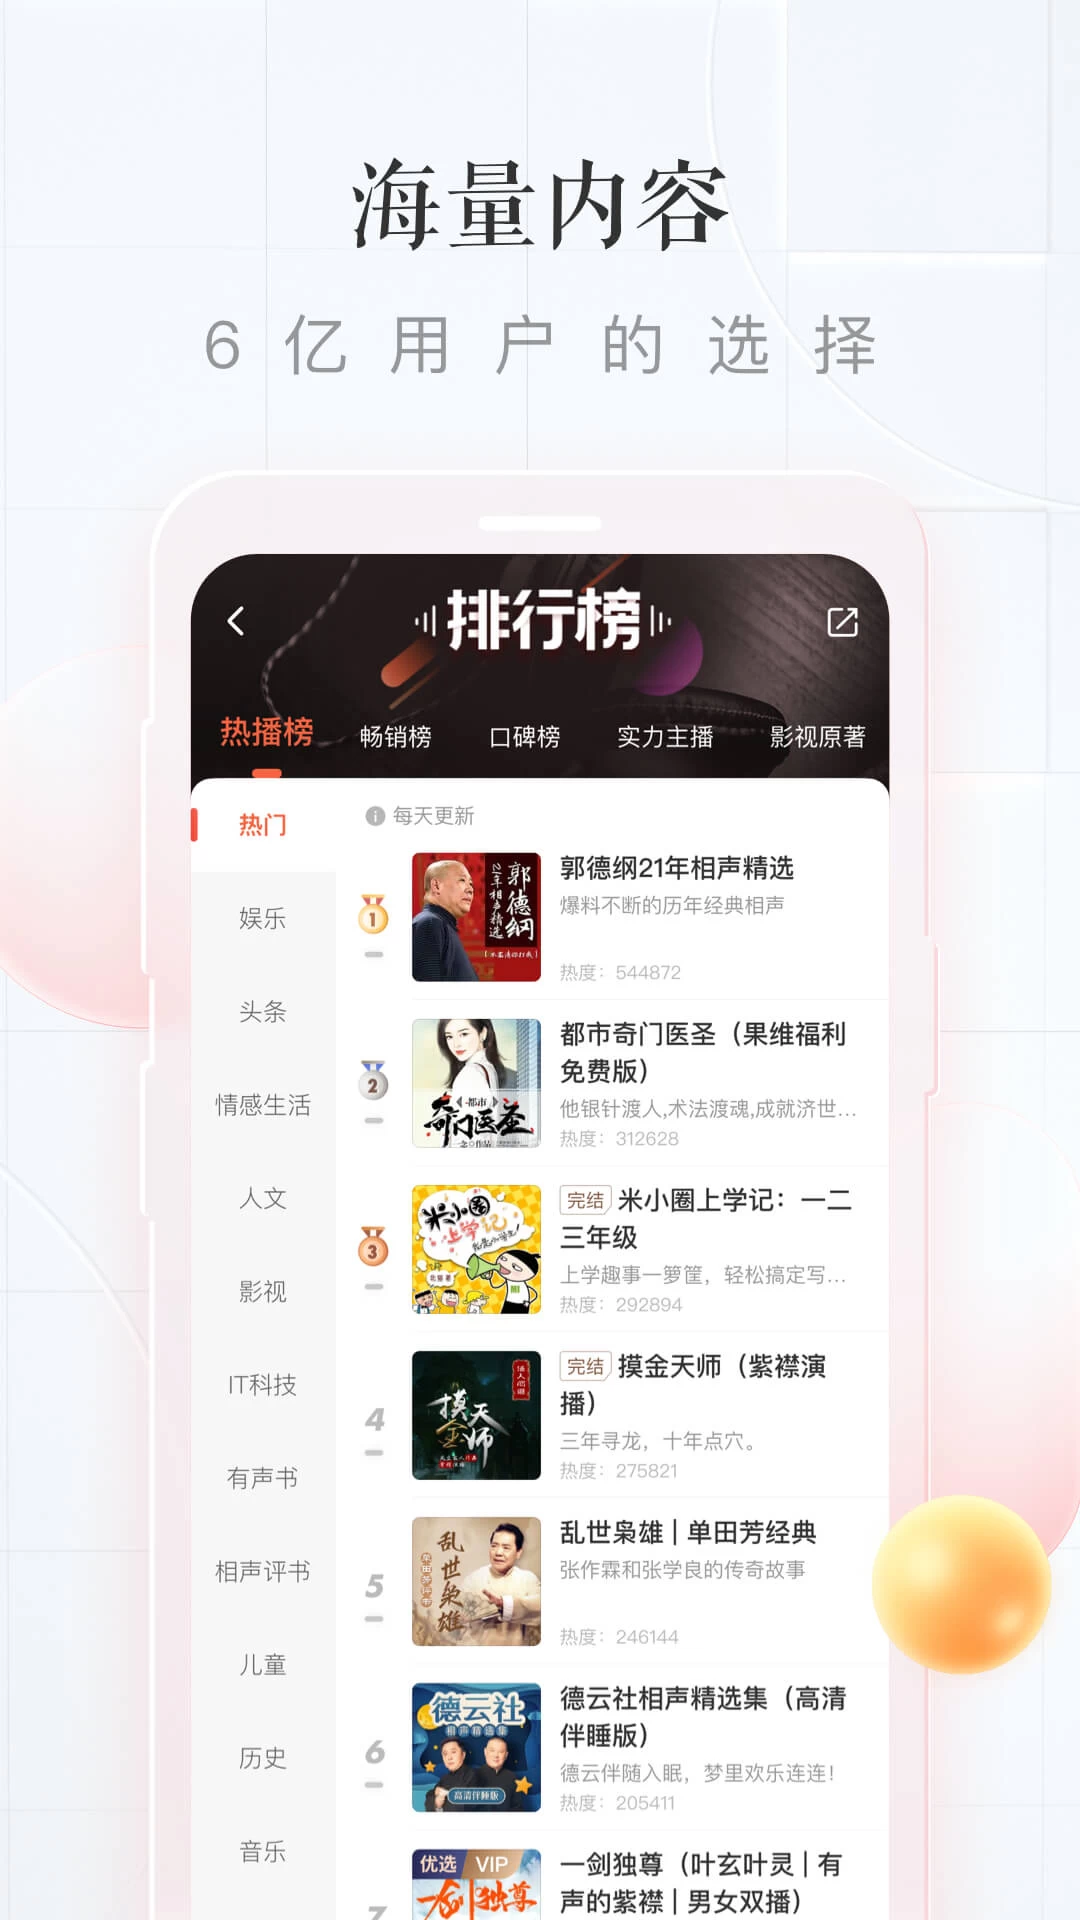 喜马拉雅极速版 v3.2.69.3 中国最大的音频分享平台，解锁会员版